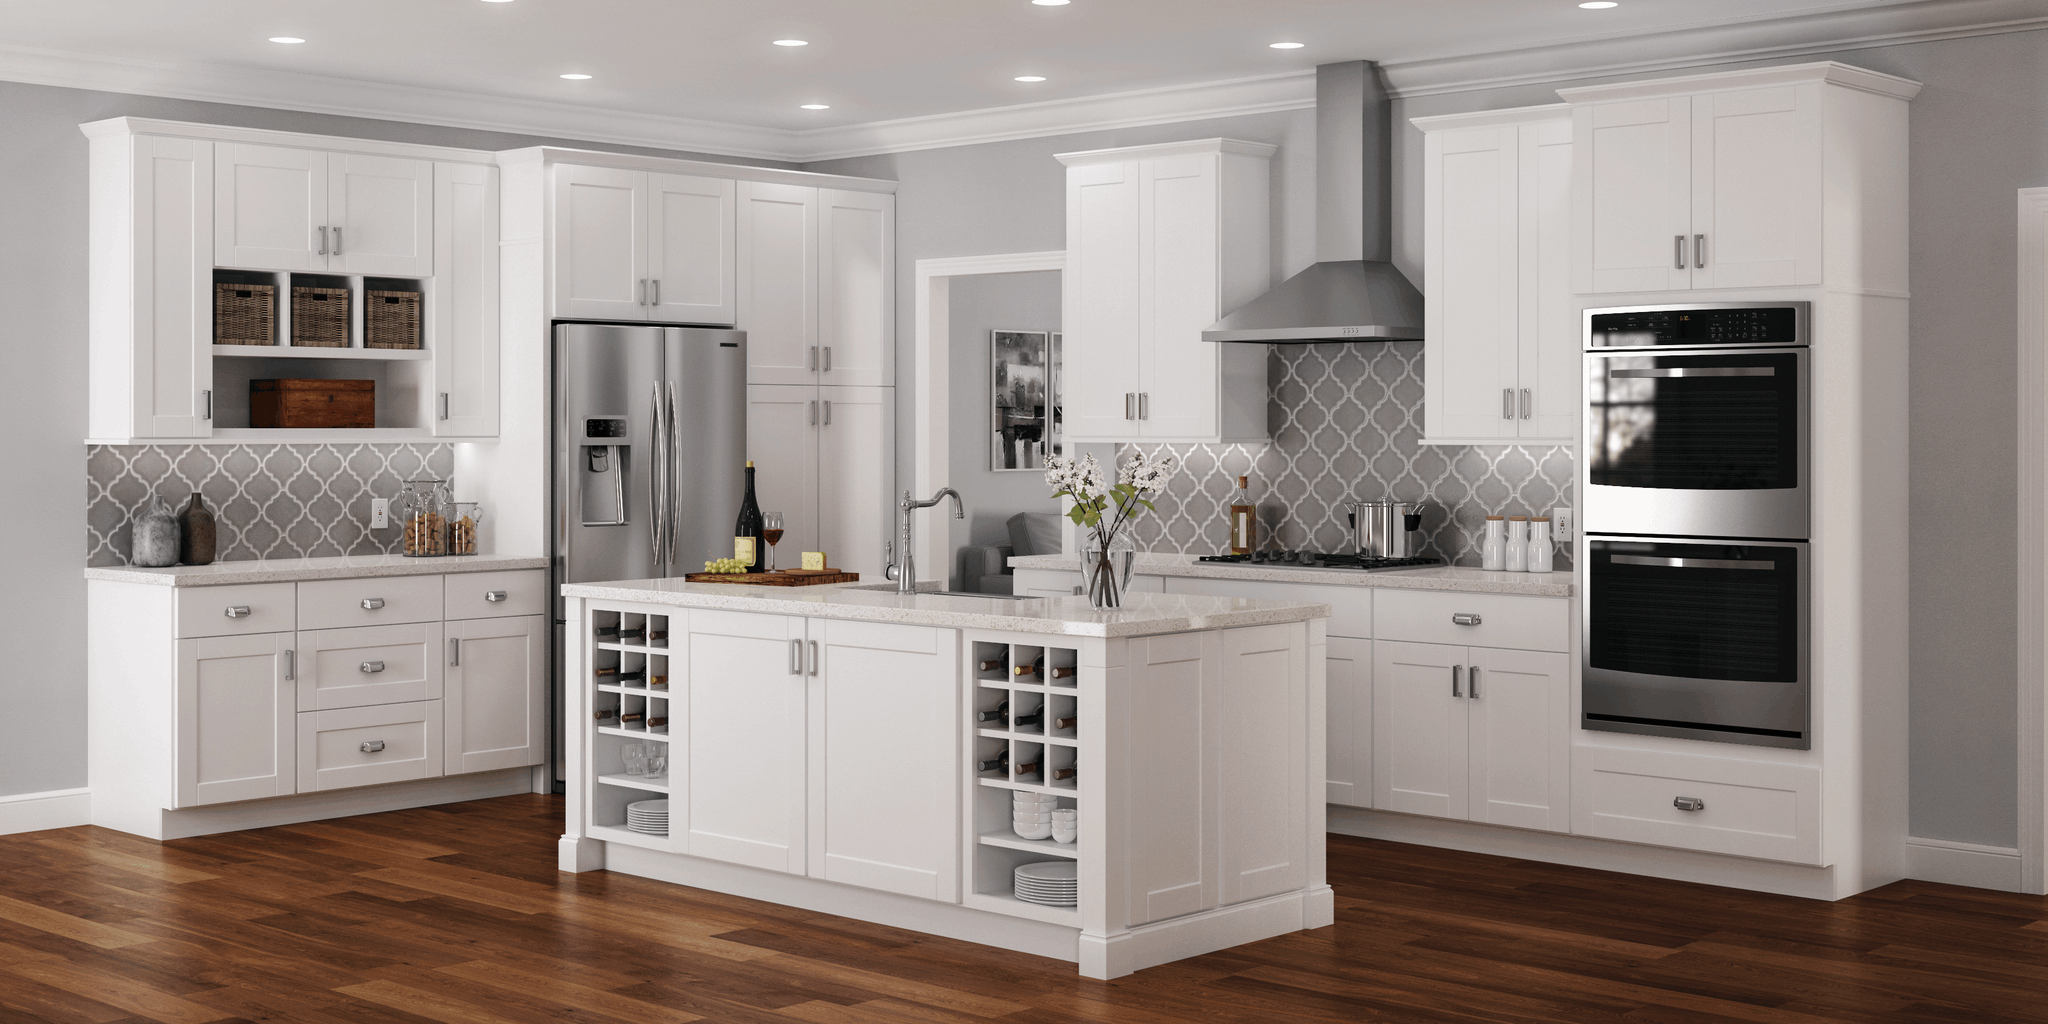 hampton bay designer pantry kitchen cabinet